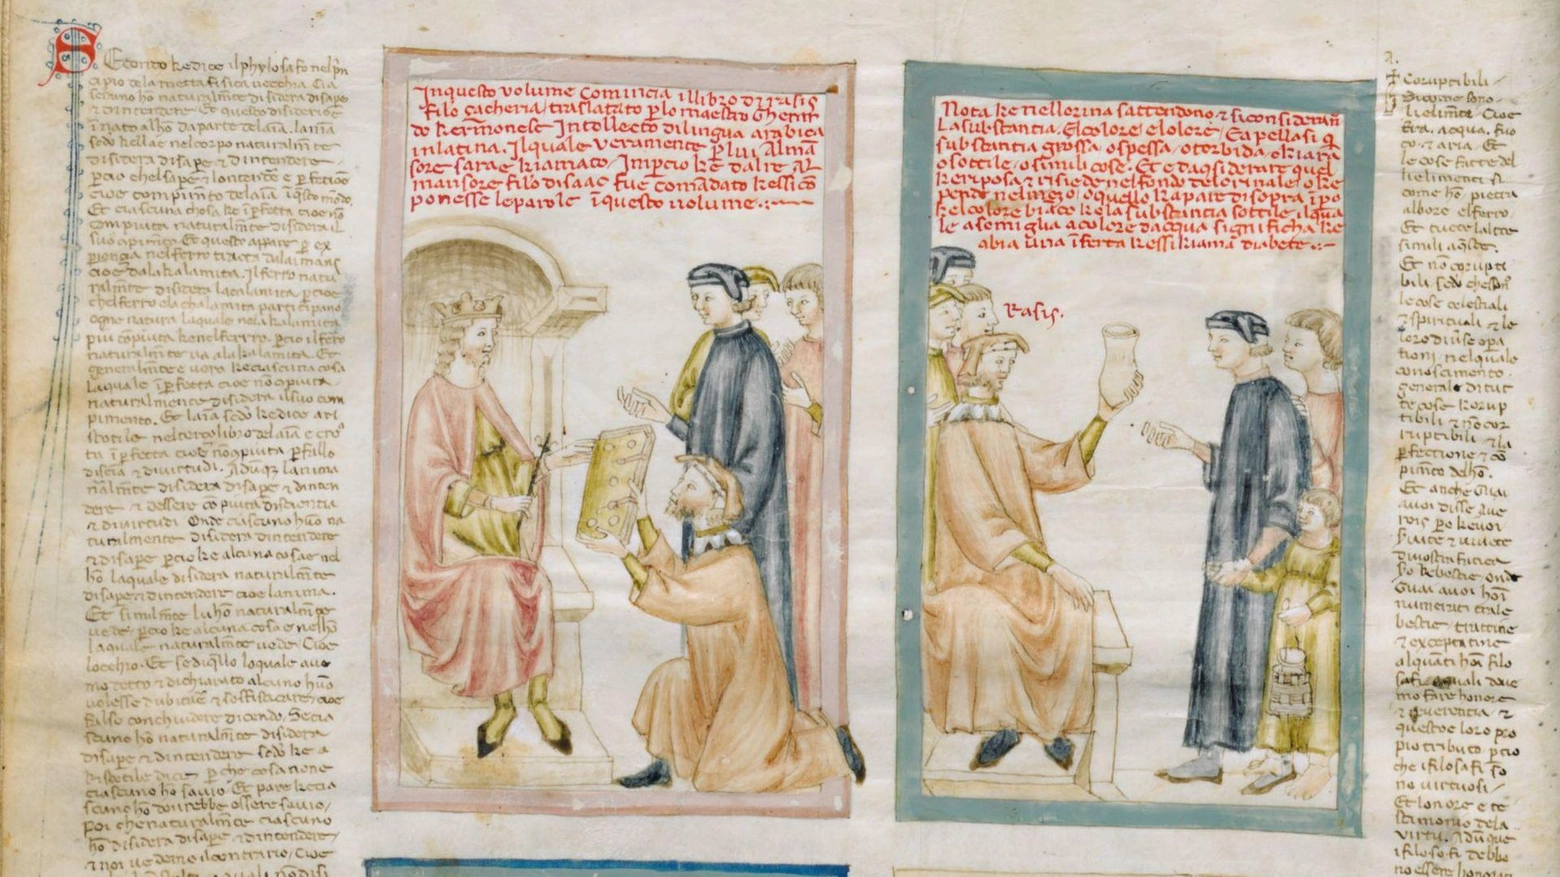 In mostra alla biblioteca Laurenziana di Firenze volumi di inestimabile significato. Le testimonianze del faticoso ingresso delle prime donne nel sistema lavorativo.